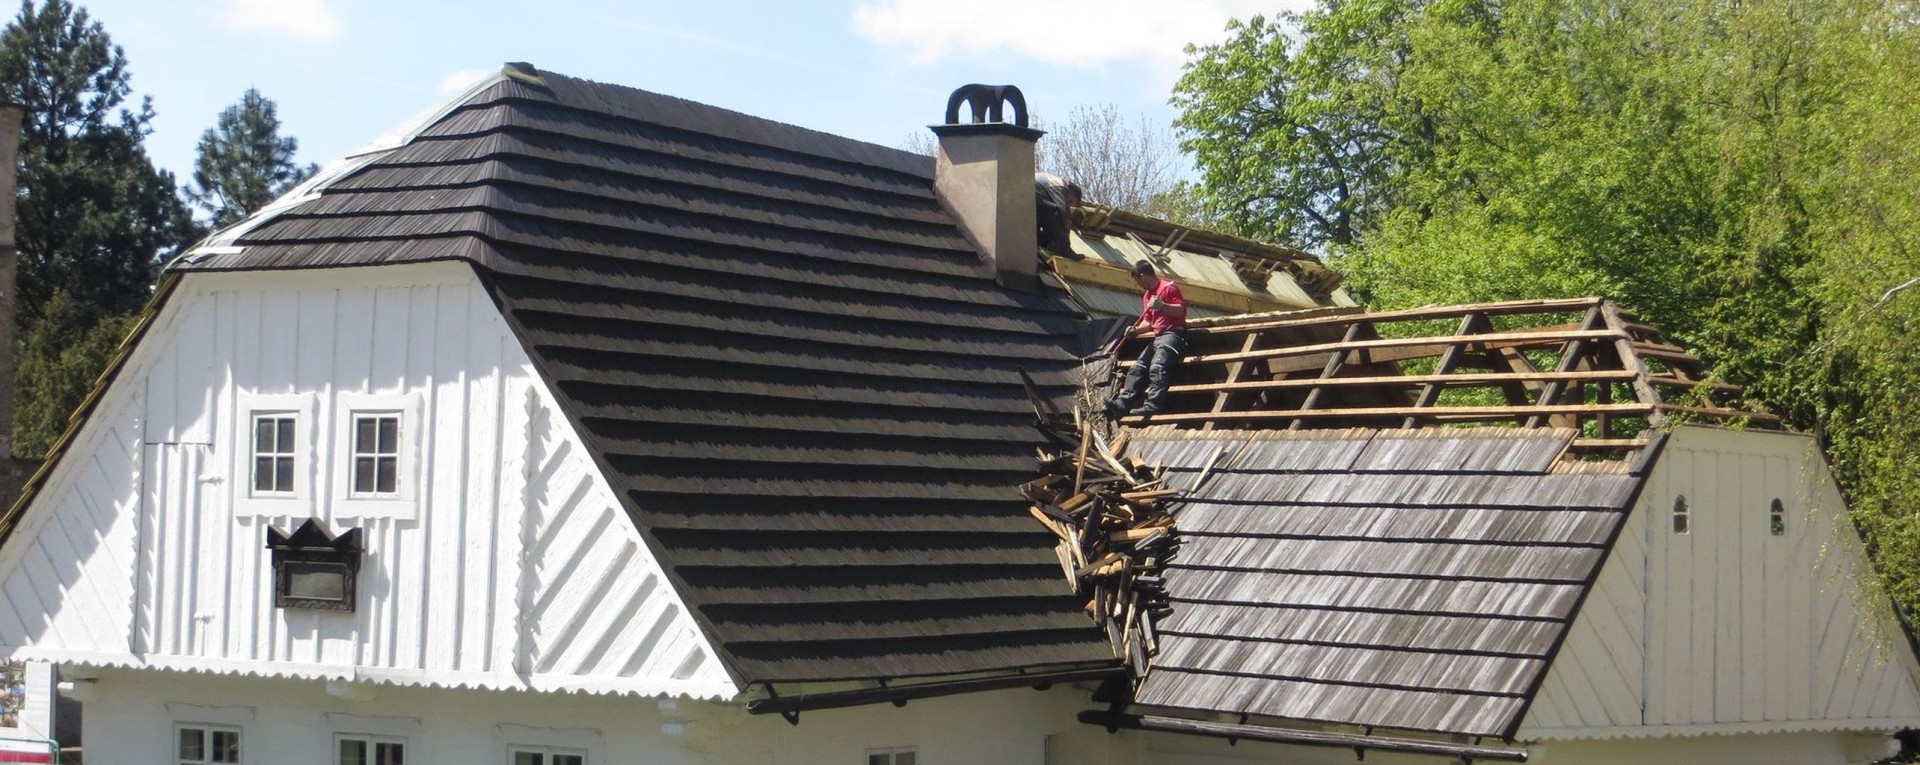 UniVista: ¿Necesito una póliza especial para proteger el techo de mi casa?